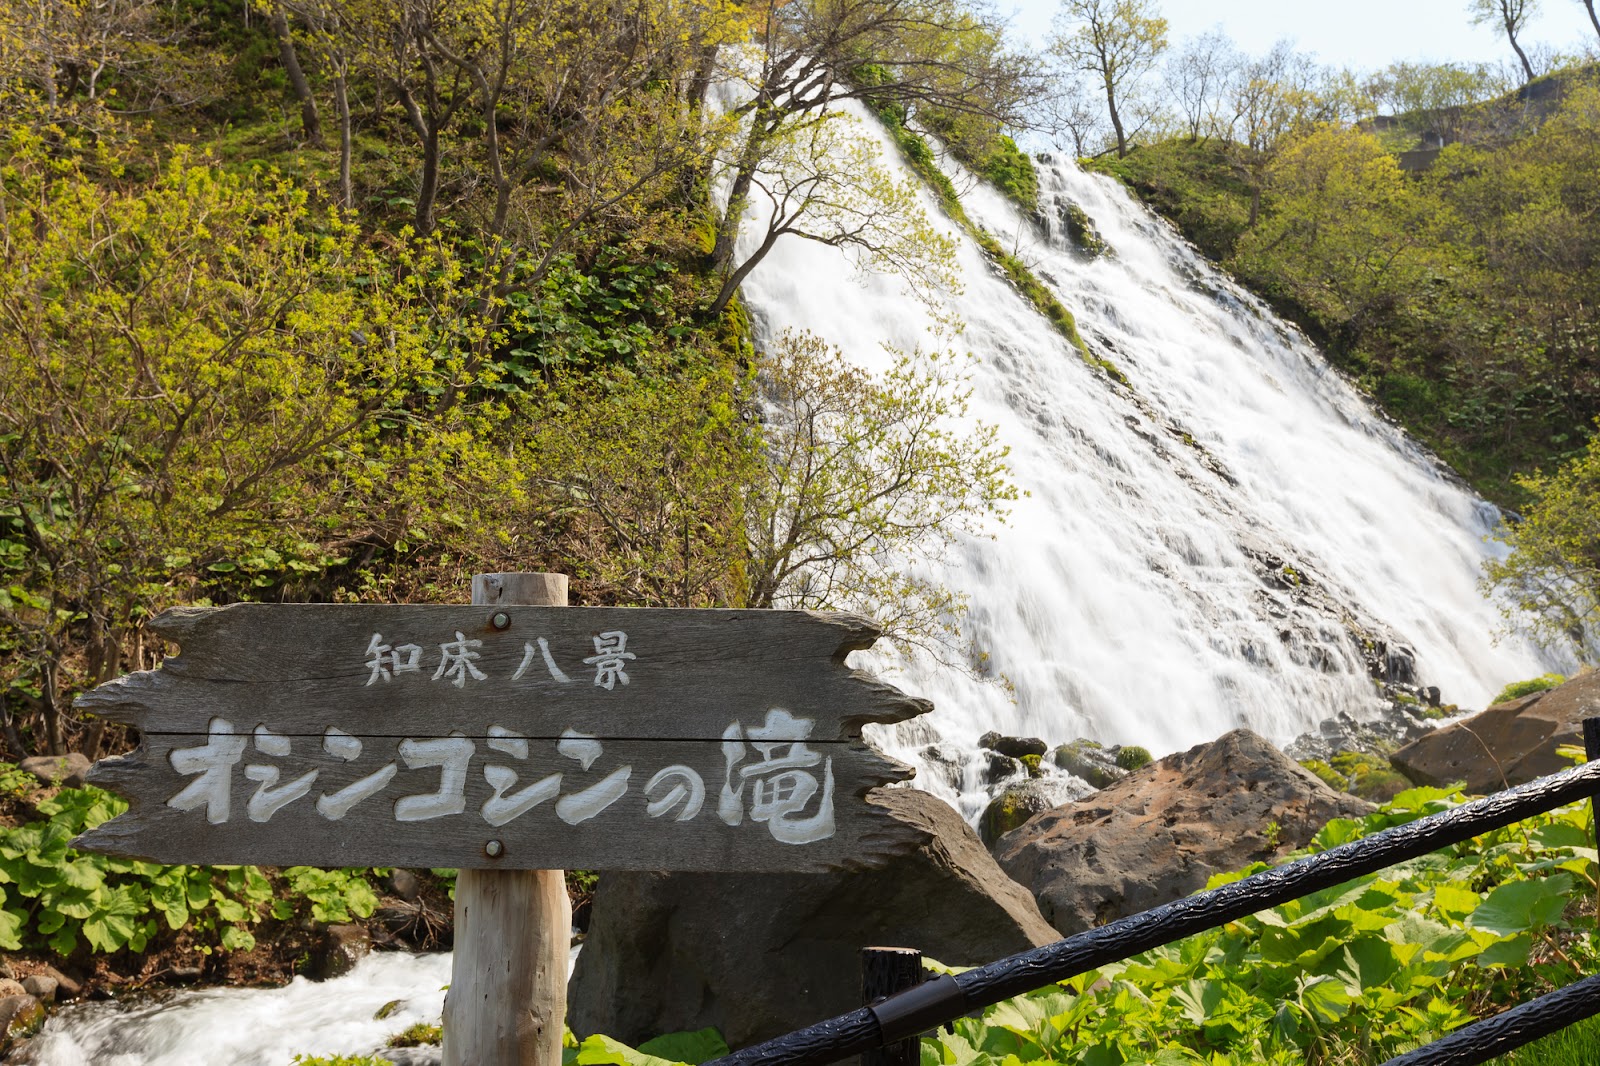 2、【知床｜斜里町】知床最大の滝から感じるマイナスイオン「オシンコシンの滝」